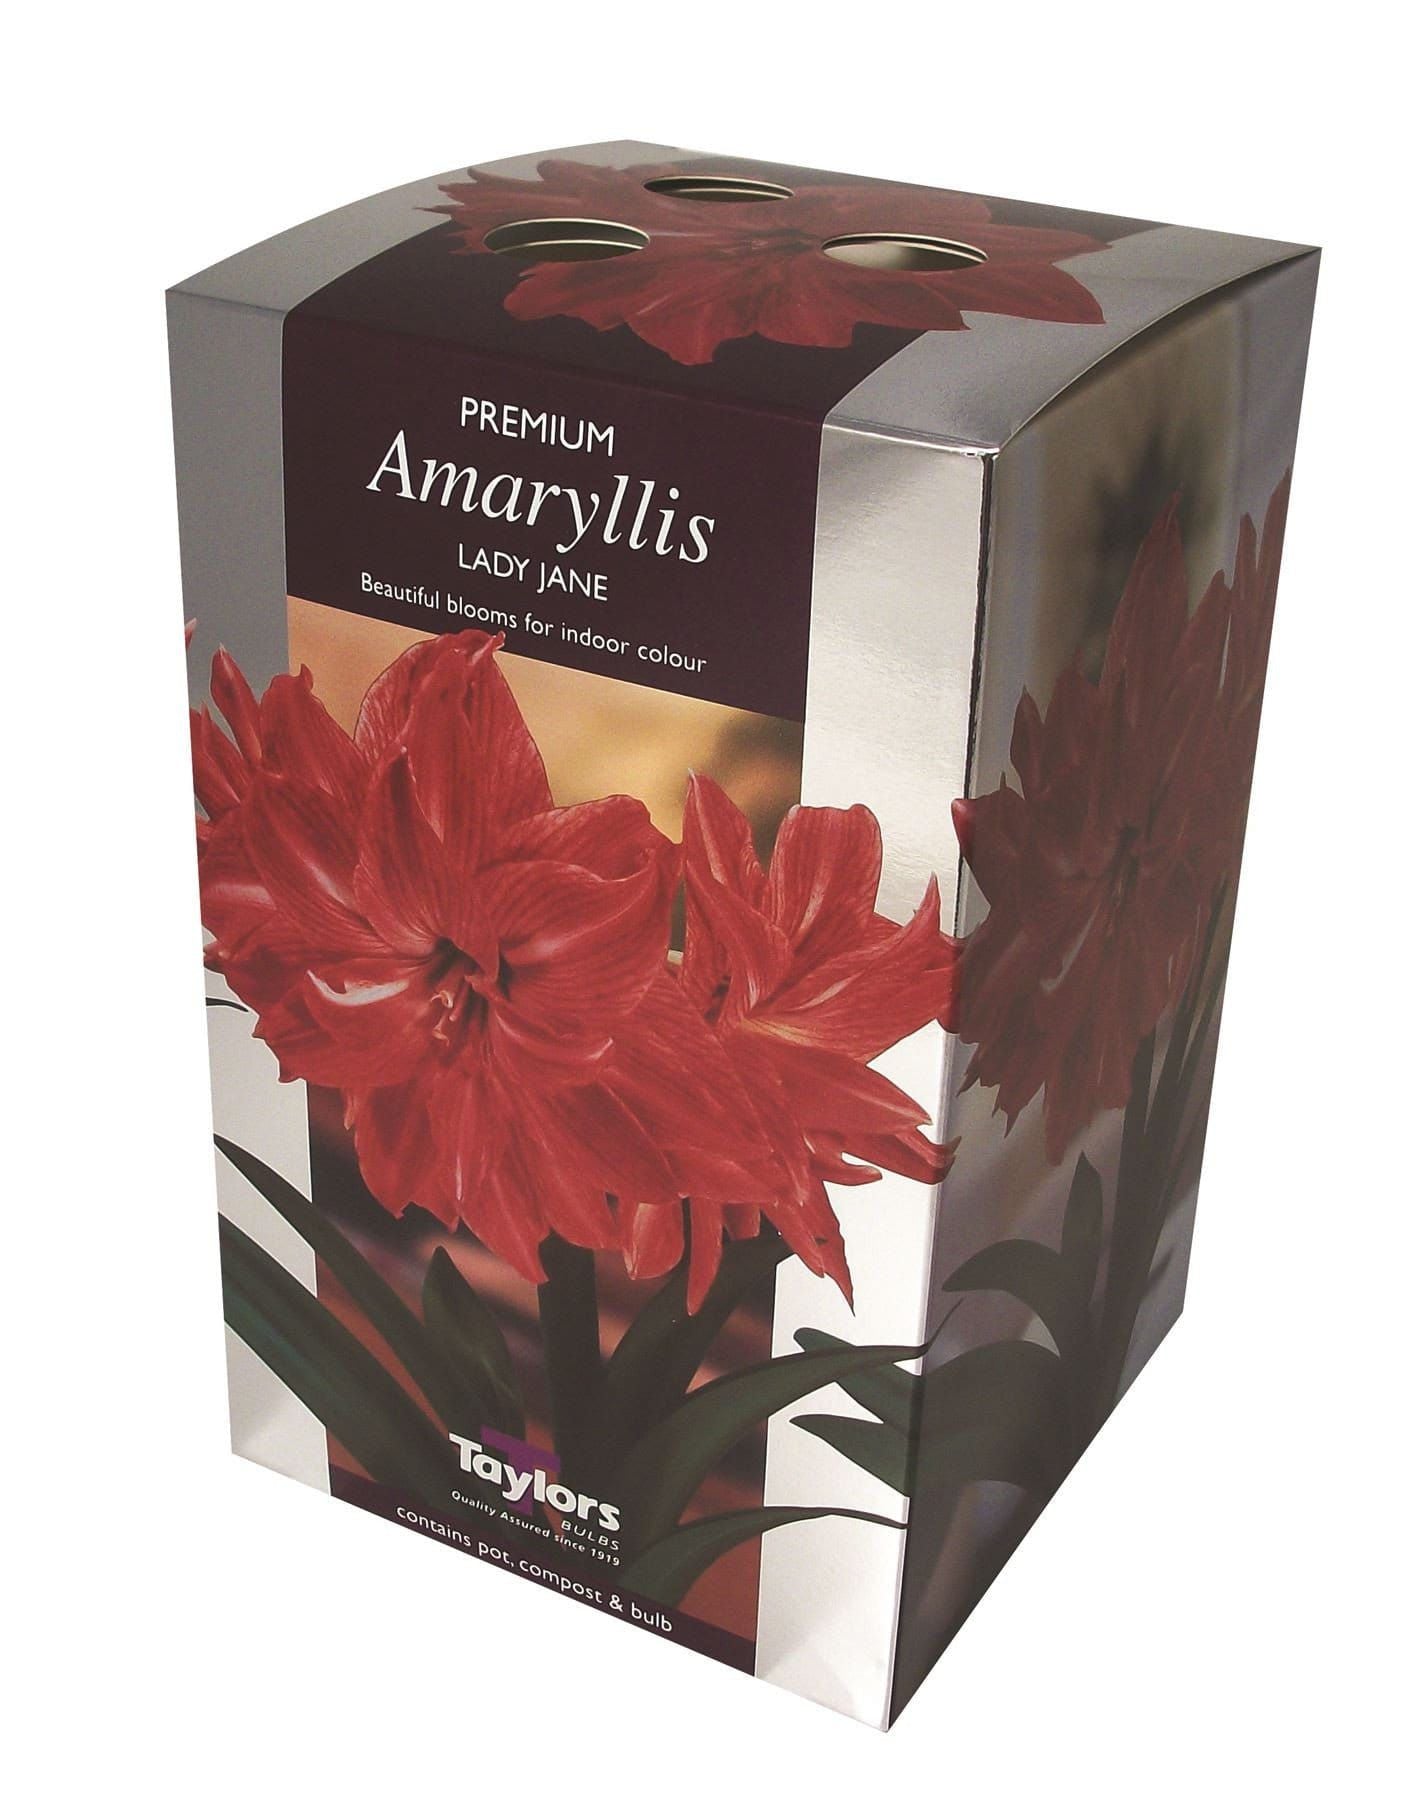 Taylors - Amaryllis Bulb Gift Pack - Lady Jane